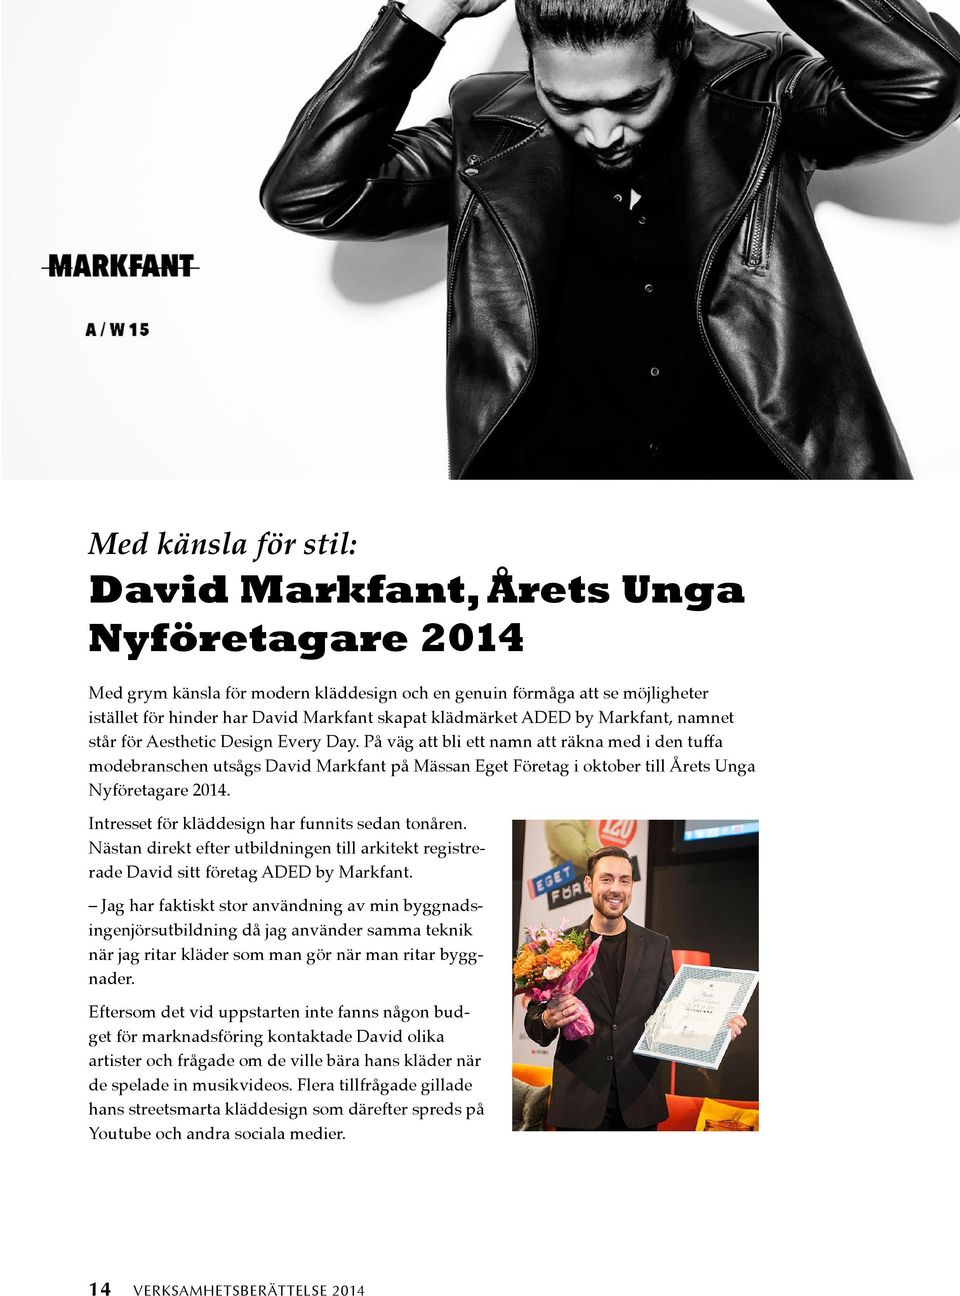 På väg att bli ett namn att räkna med i den tuffa modebranschen utsågs David Markfant på Mässan Eget Företag i oktober till Årets Unga Nyföretagare 2014.